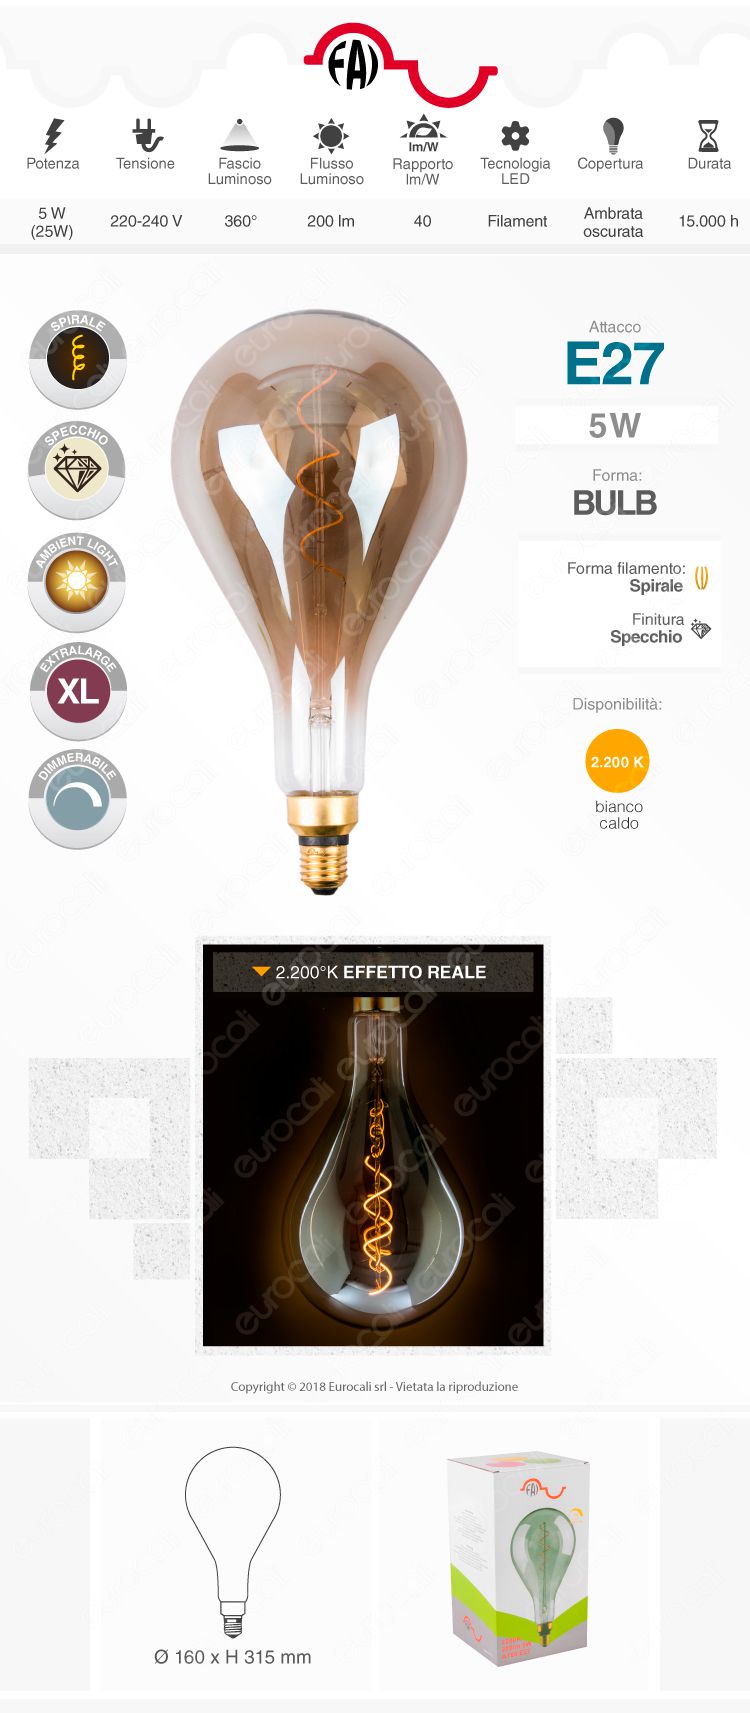 FAI Lampadina E27 Filamento LED a Spirale 5W Bulb A160 con Vetro Ambrato Oscurato Dimmerabile - mod. 5223/CA/FU